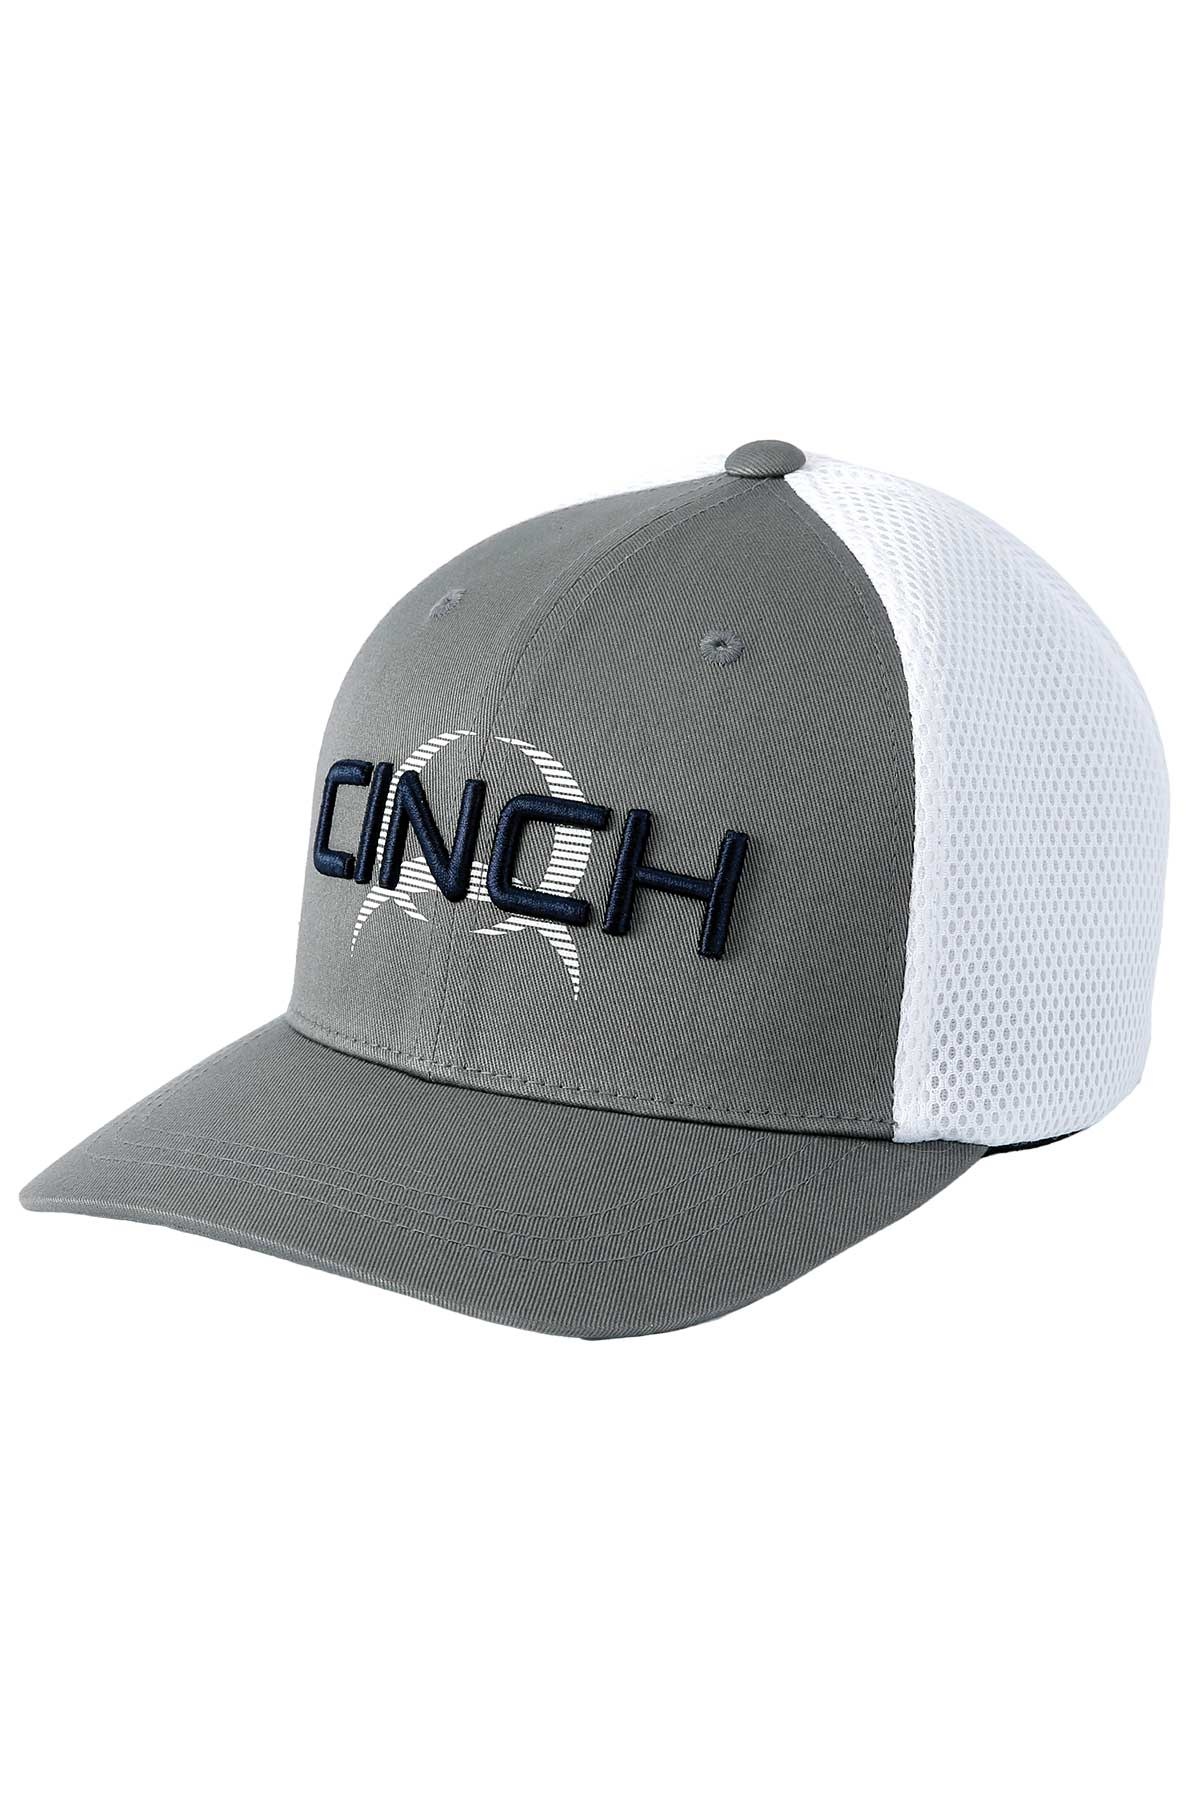 CINCH - GRAY CAP FLEXFIT Wear Western MCC0653311 Corral